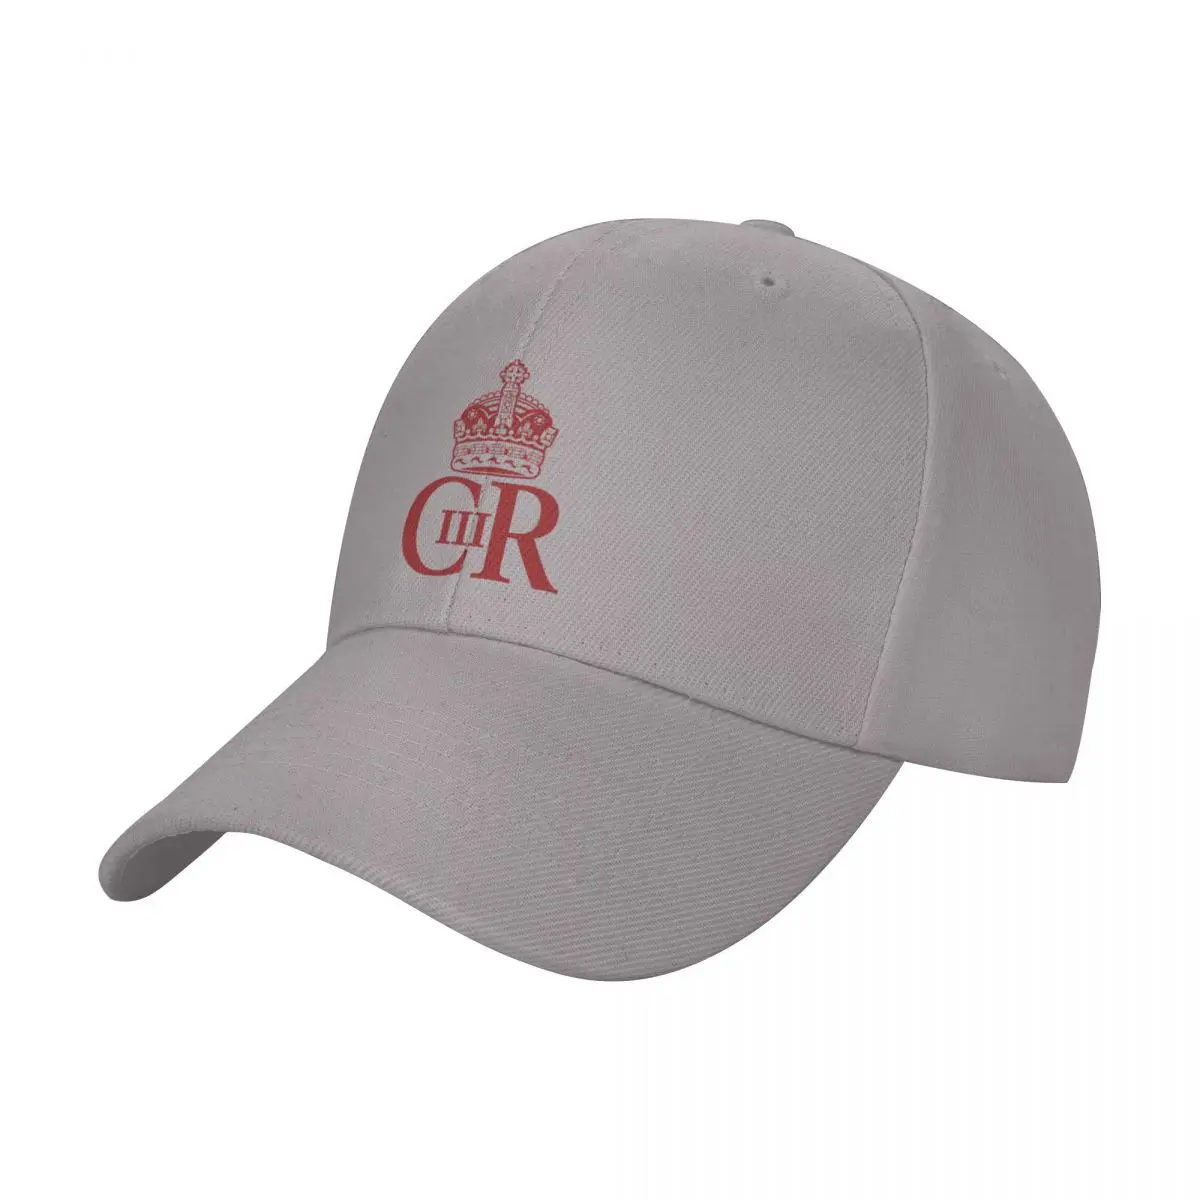 Королевская кепка Cypher of King Charles III Бейсболка Военная тактическая кепка Мужская кепка люксового бренда Женская